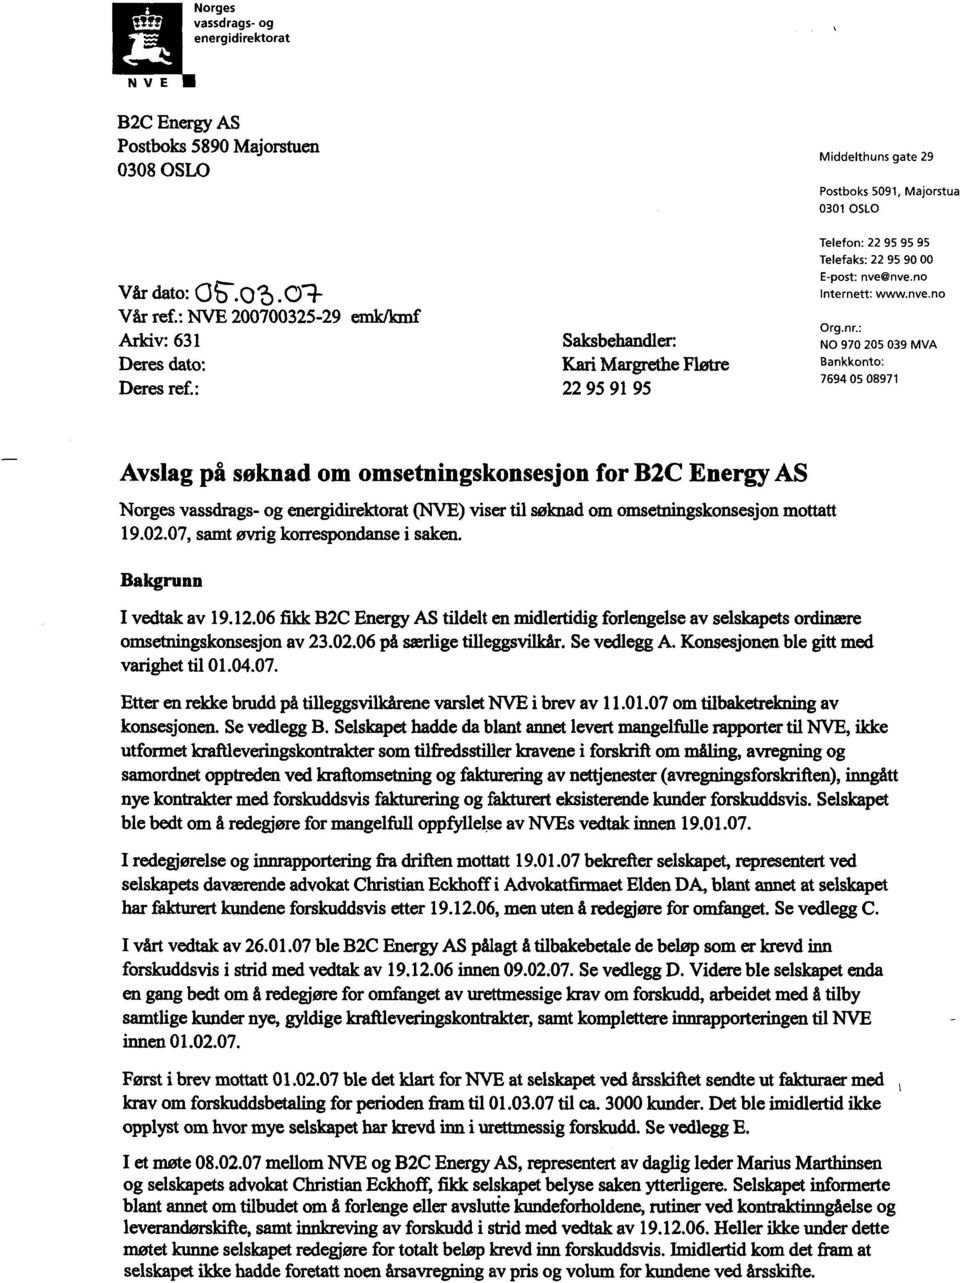 : NO 970 205 039 MVA Bankkonto: 7694 05 08971 Avslag på søknad om omsetningskonsesjon for WC Energy AS Norges vassdrags- og energidirektorat(nve) viser til søknad om omsetningskonsesjon mottatt 19.02.